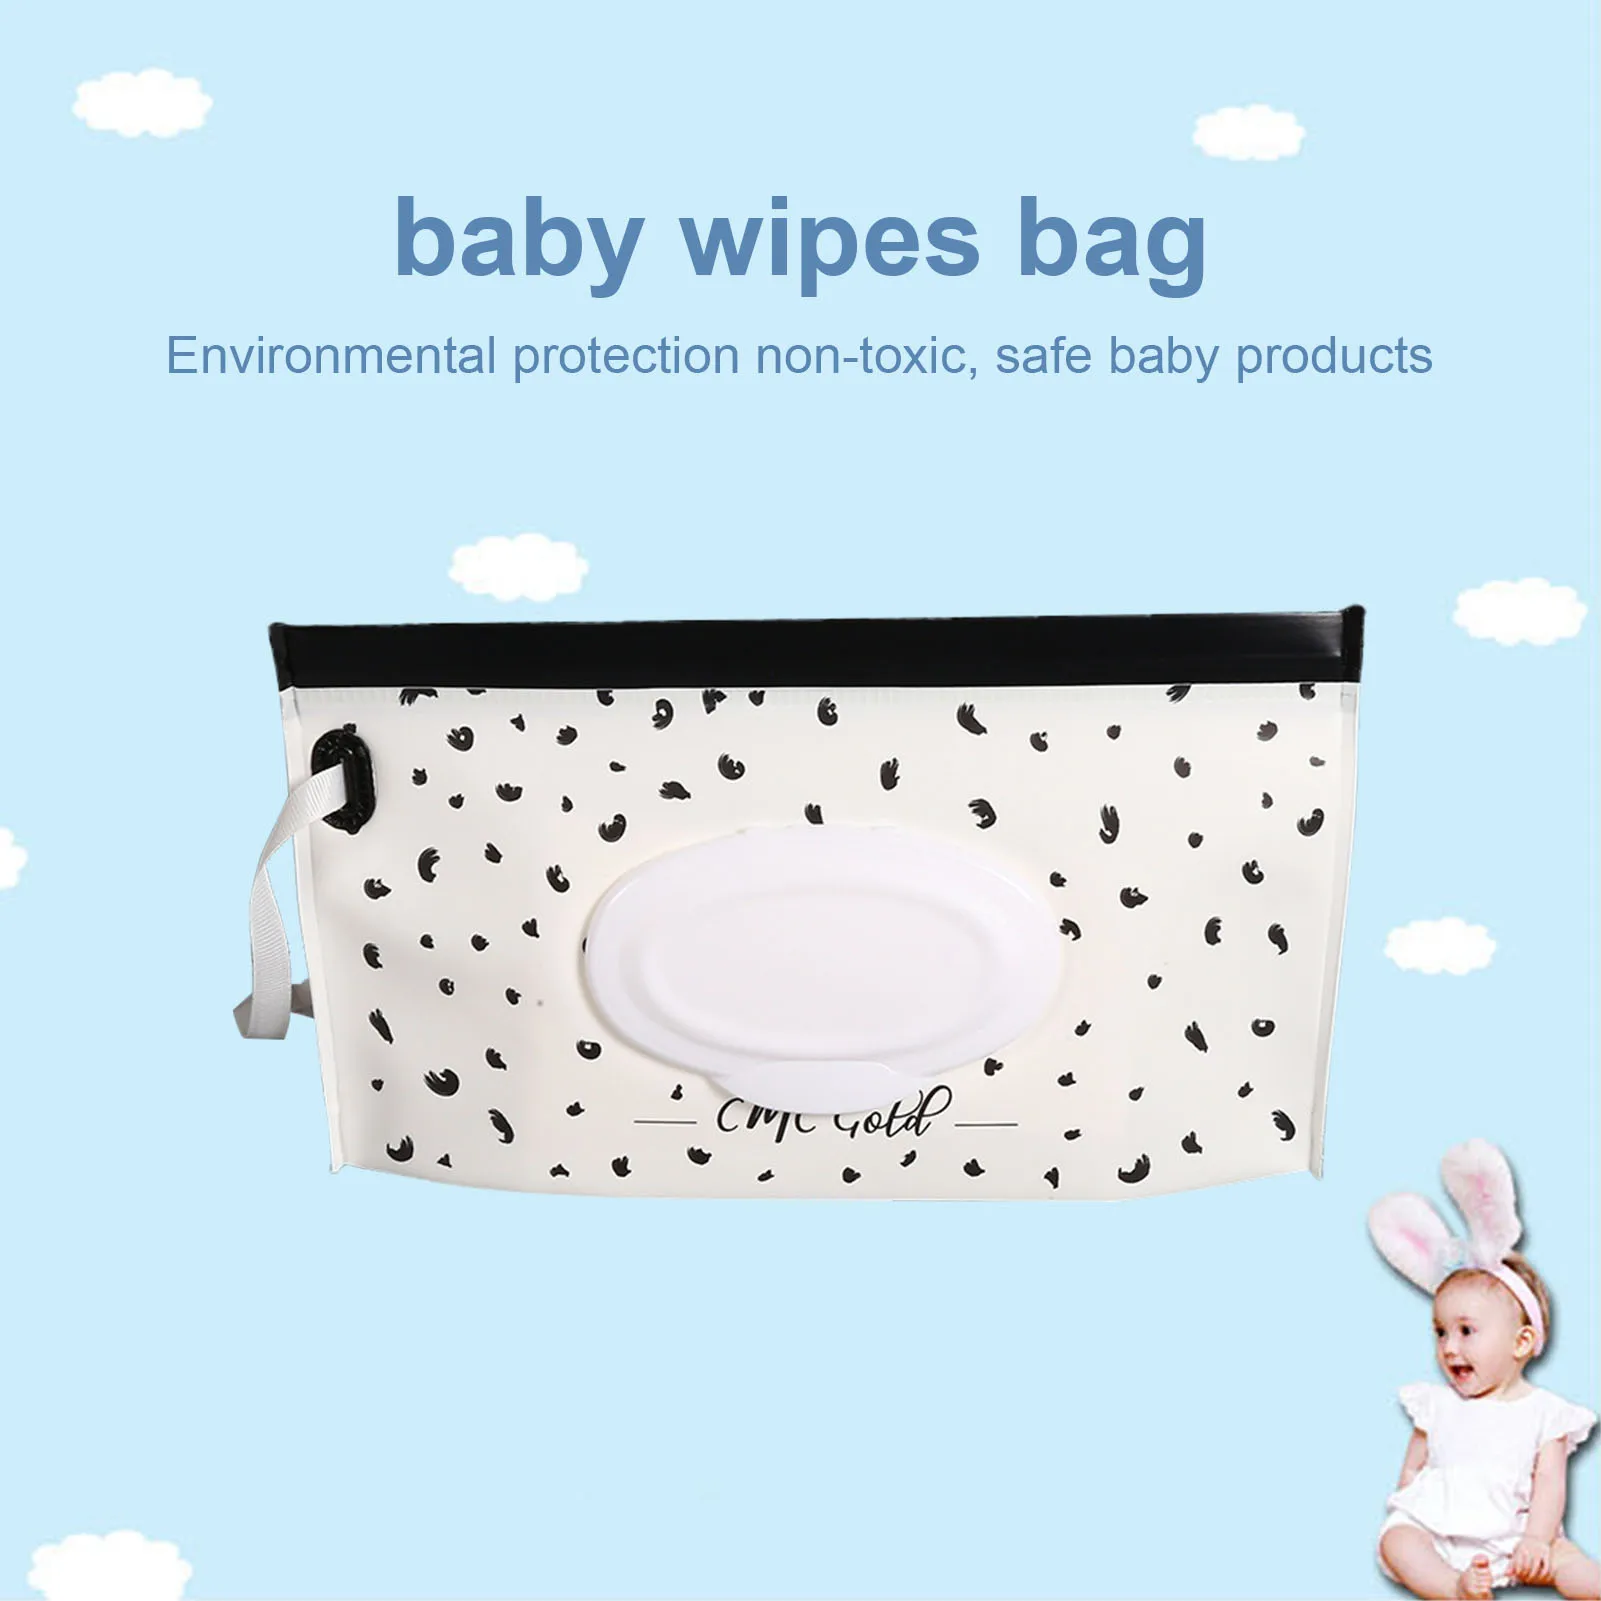 Viagem wet toalhetes caixa bolsa de tecido molhado para crianças portátil toalhetes dispensador toalhetes caso para manter tecidos molhados frescos